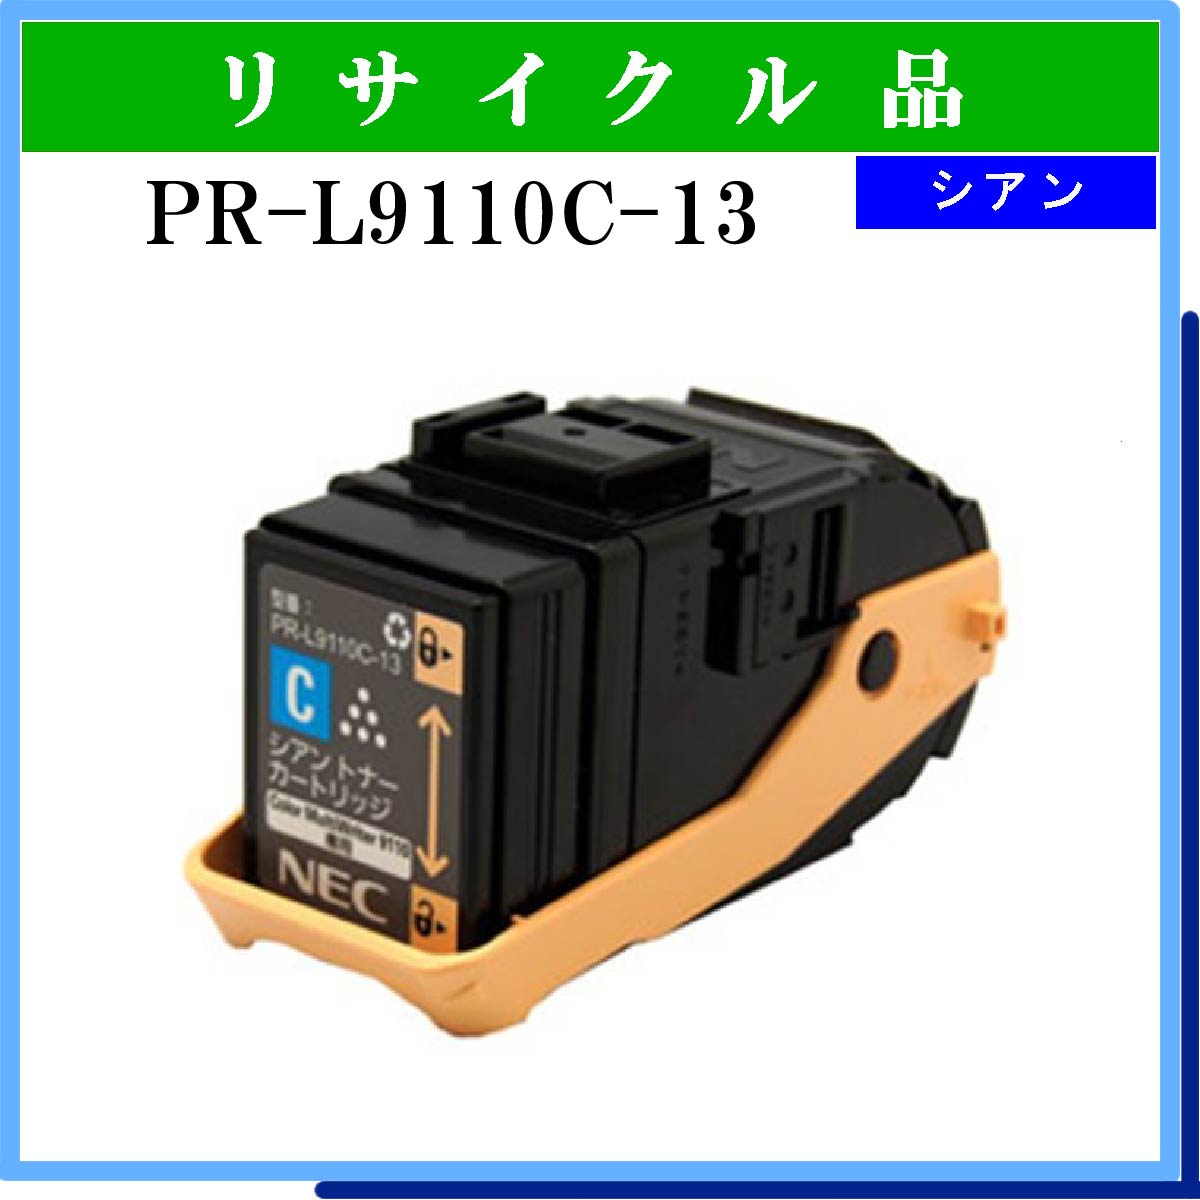 とは・・・ NEC（日本電気）PR-L9110C-13W シアン 2本セット 純正